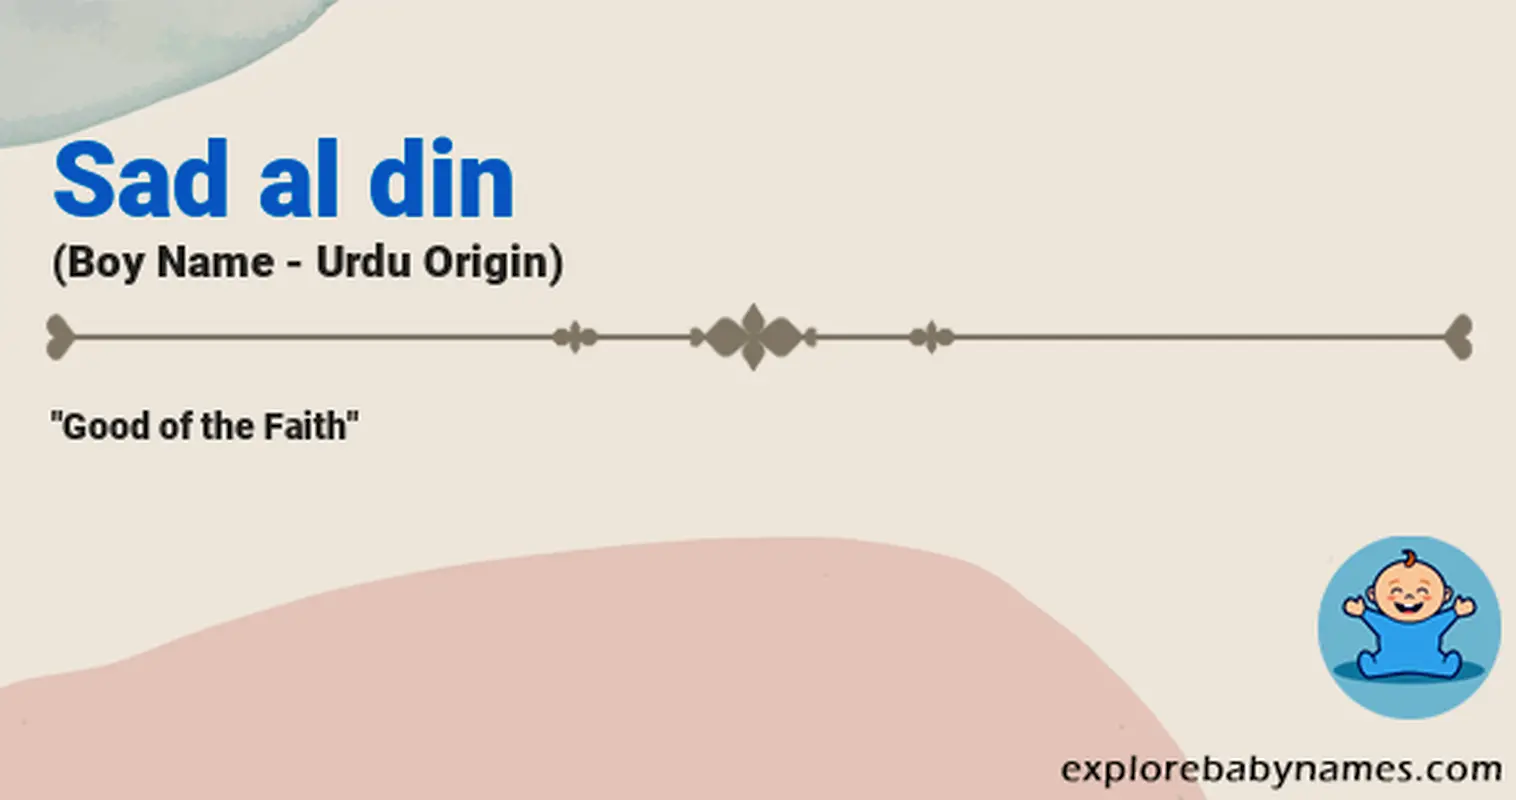 Meaning of Sad al din